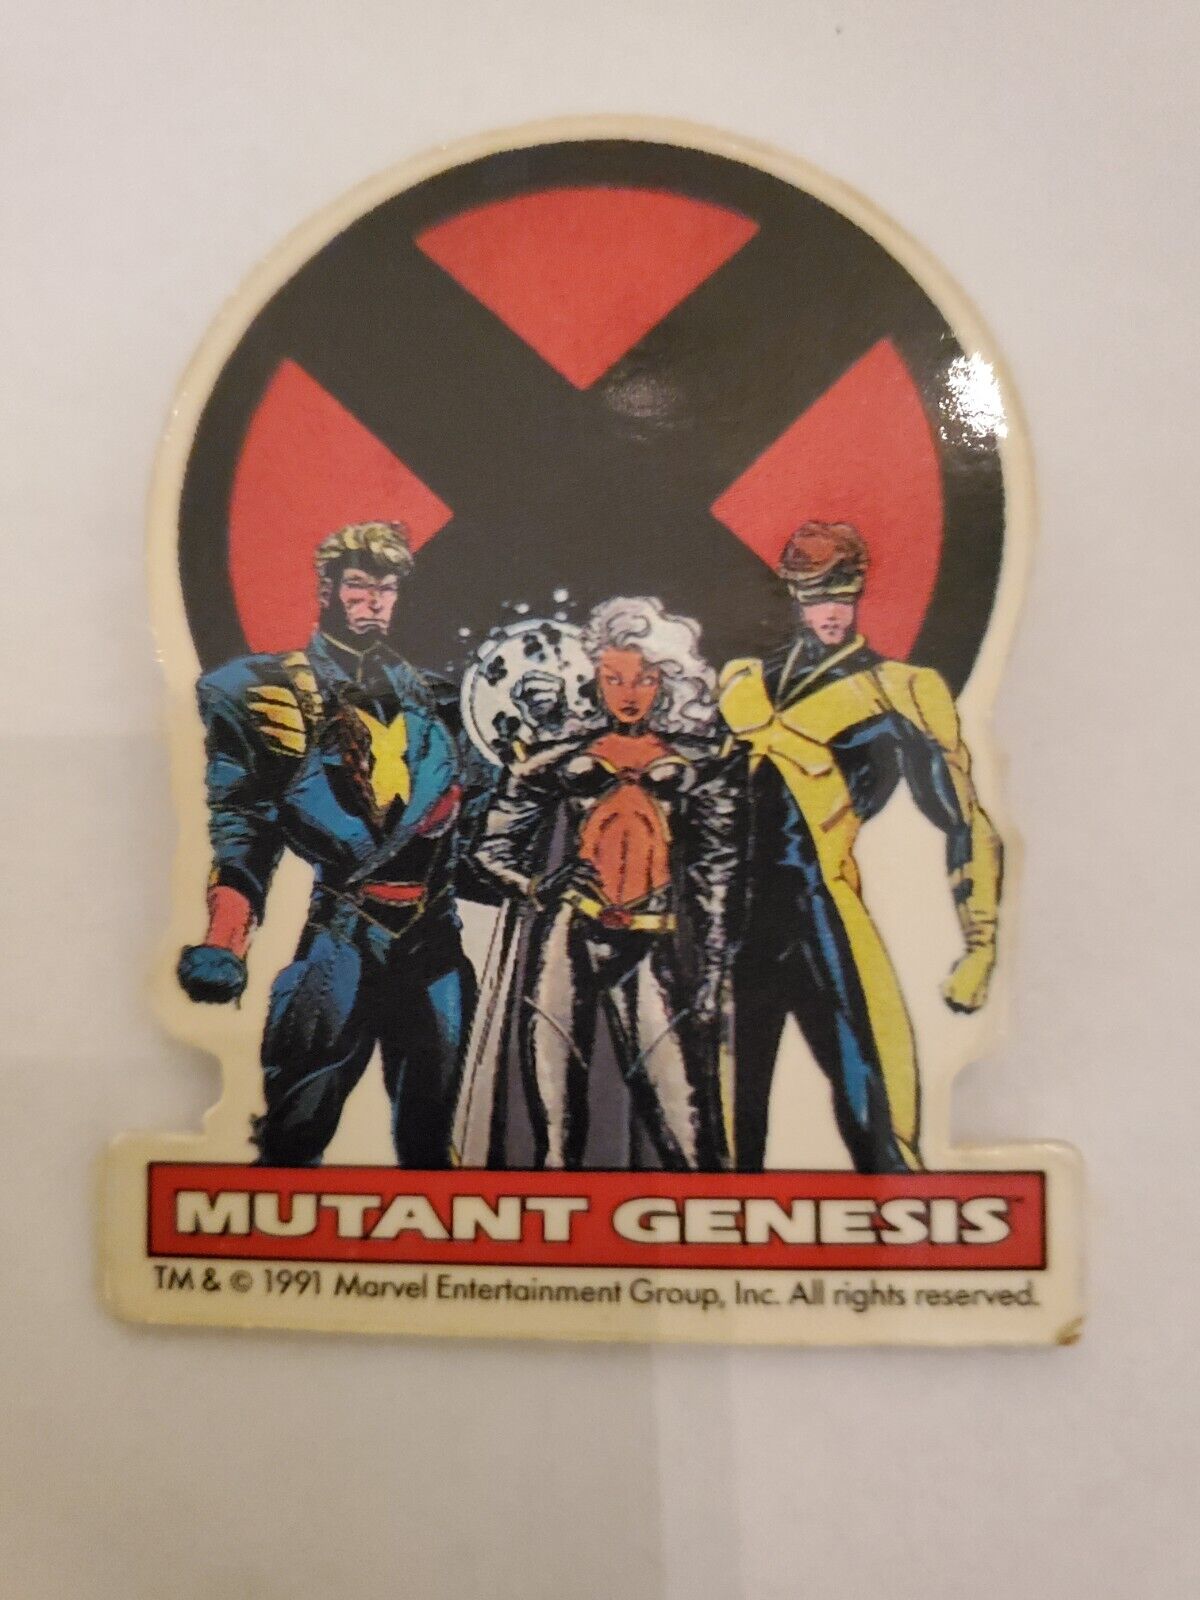 X-Men Mutant Genesis Vintage Pin Badge 1991 Marvel